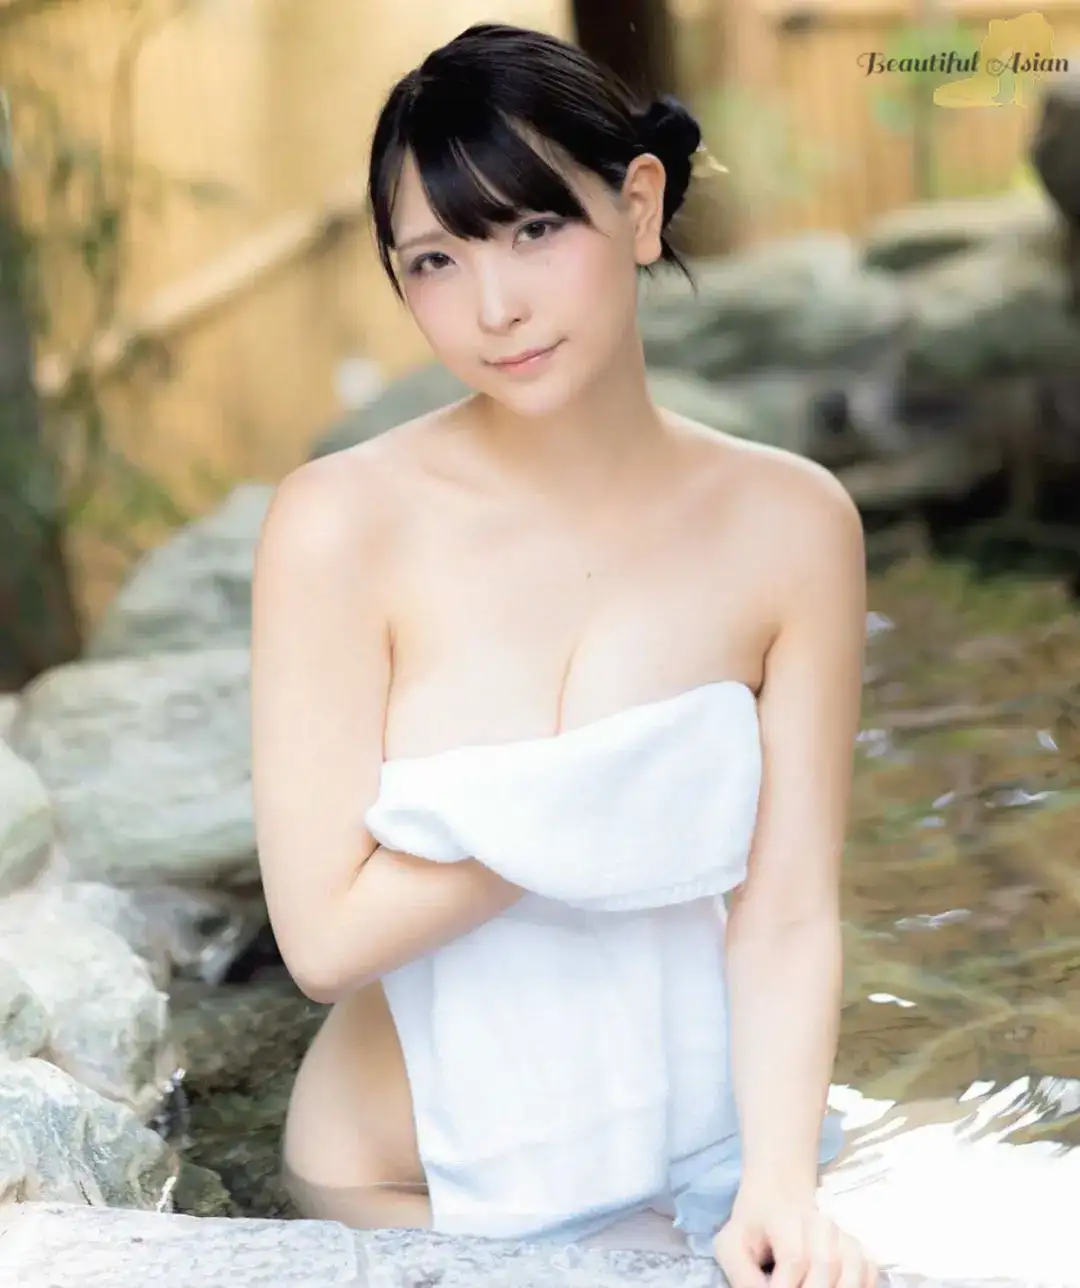 beautiful Japanese females image